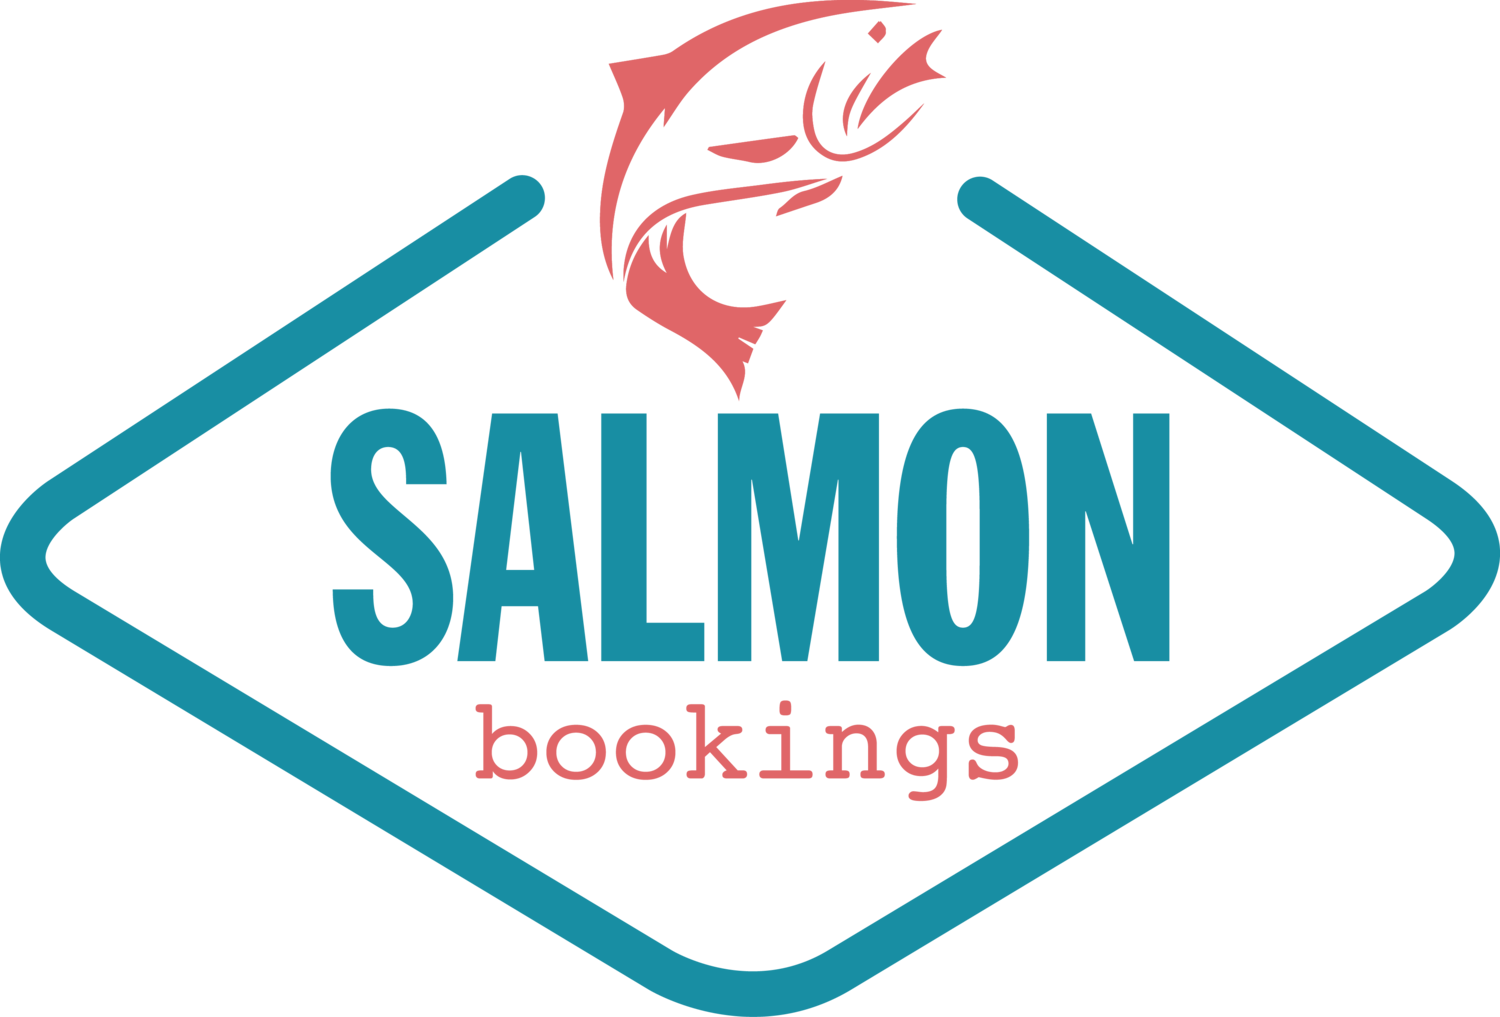 Salmon bookings